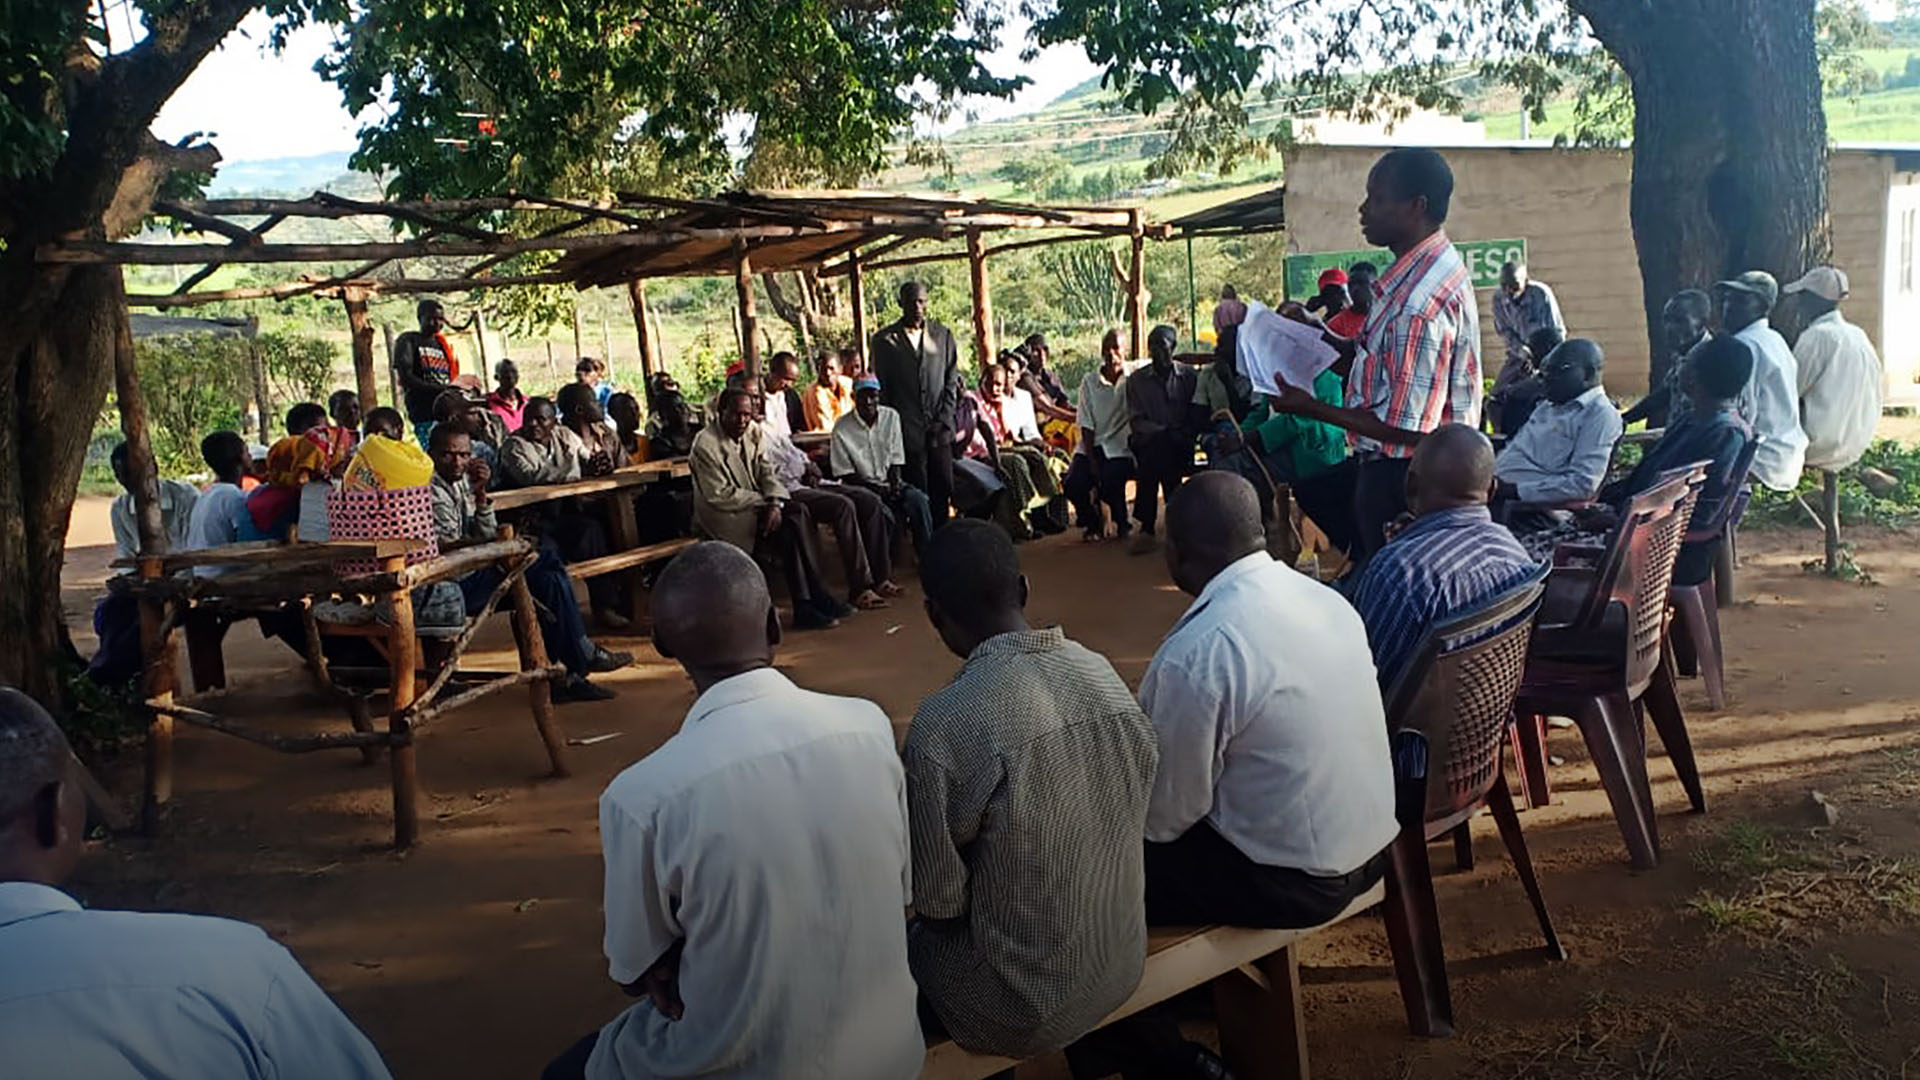 Man teaching in rural areas